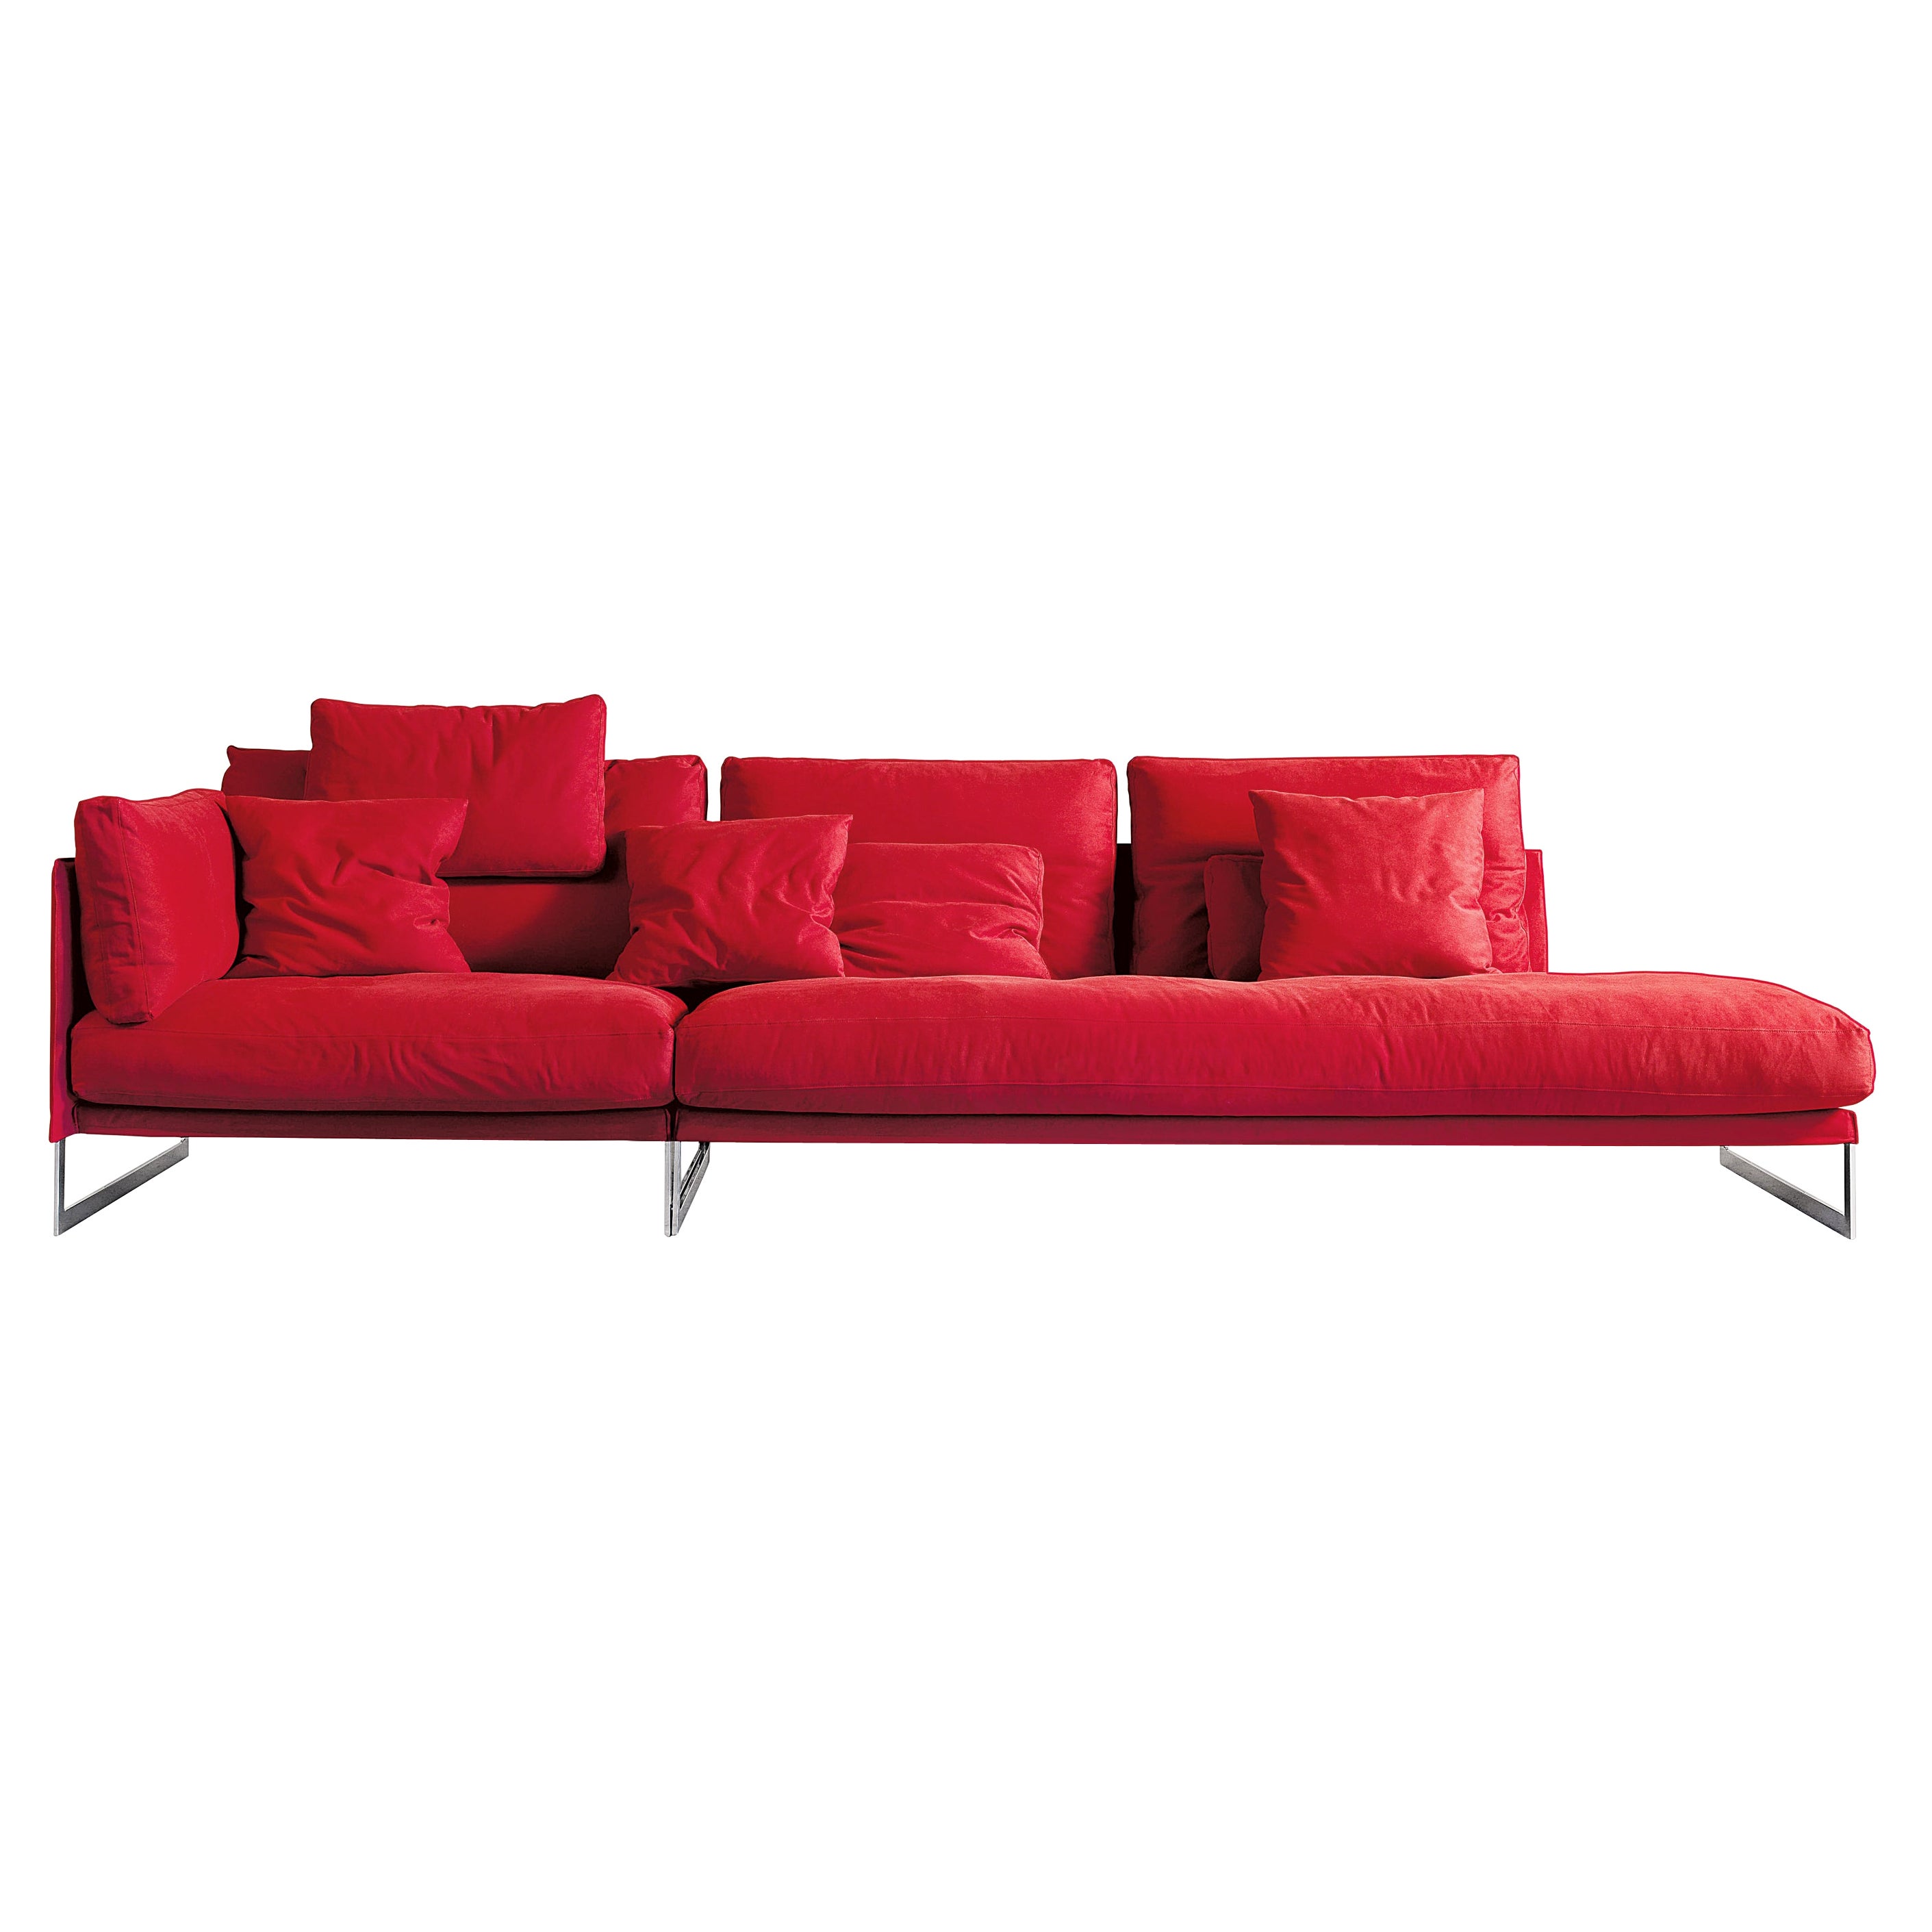 Livingston Small Sofa in Red Velvet Upholstery with Chrome by Giuseppe Viganò